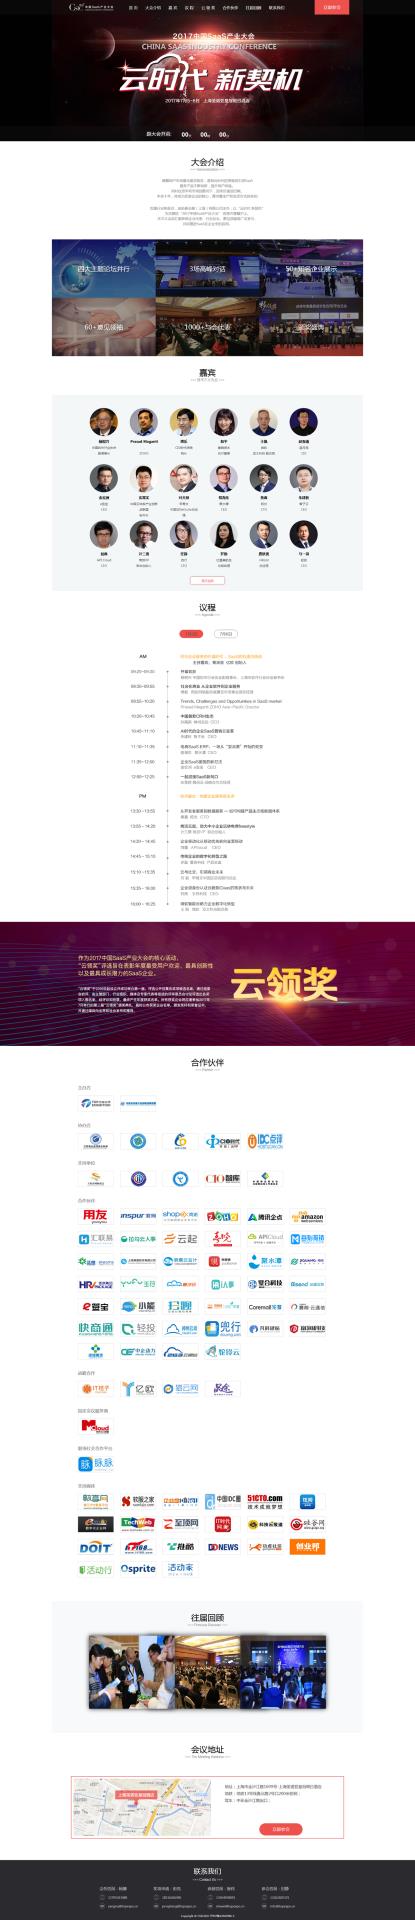 2017中国SaaS产业大会.jpg